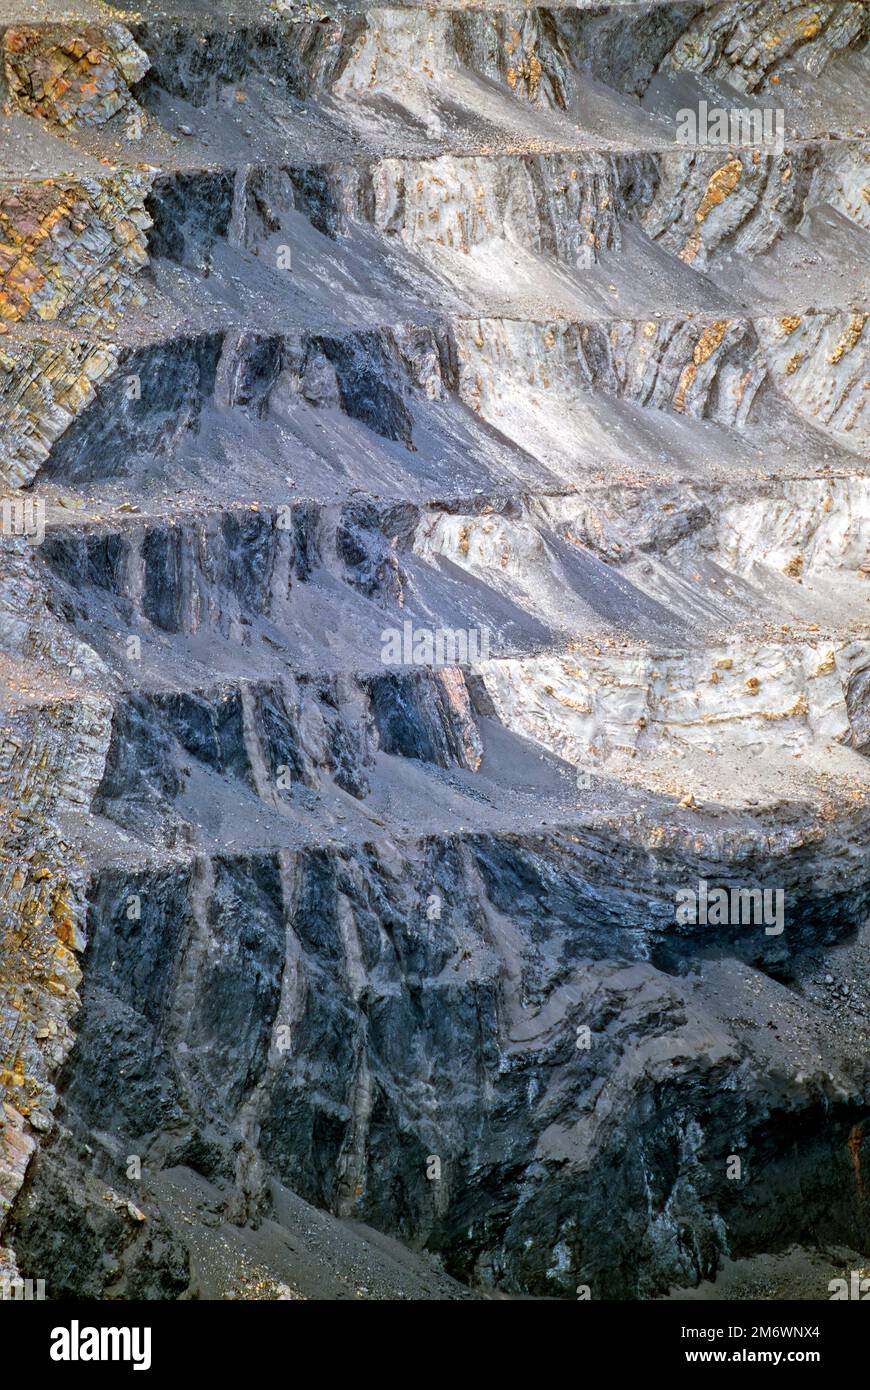 Une veine de charbon découverte dans la face rocheuse d'une mine de charbon à ciel ouvert dans les régions rurales de l'Alberta au Canada Banque D'Images